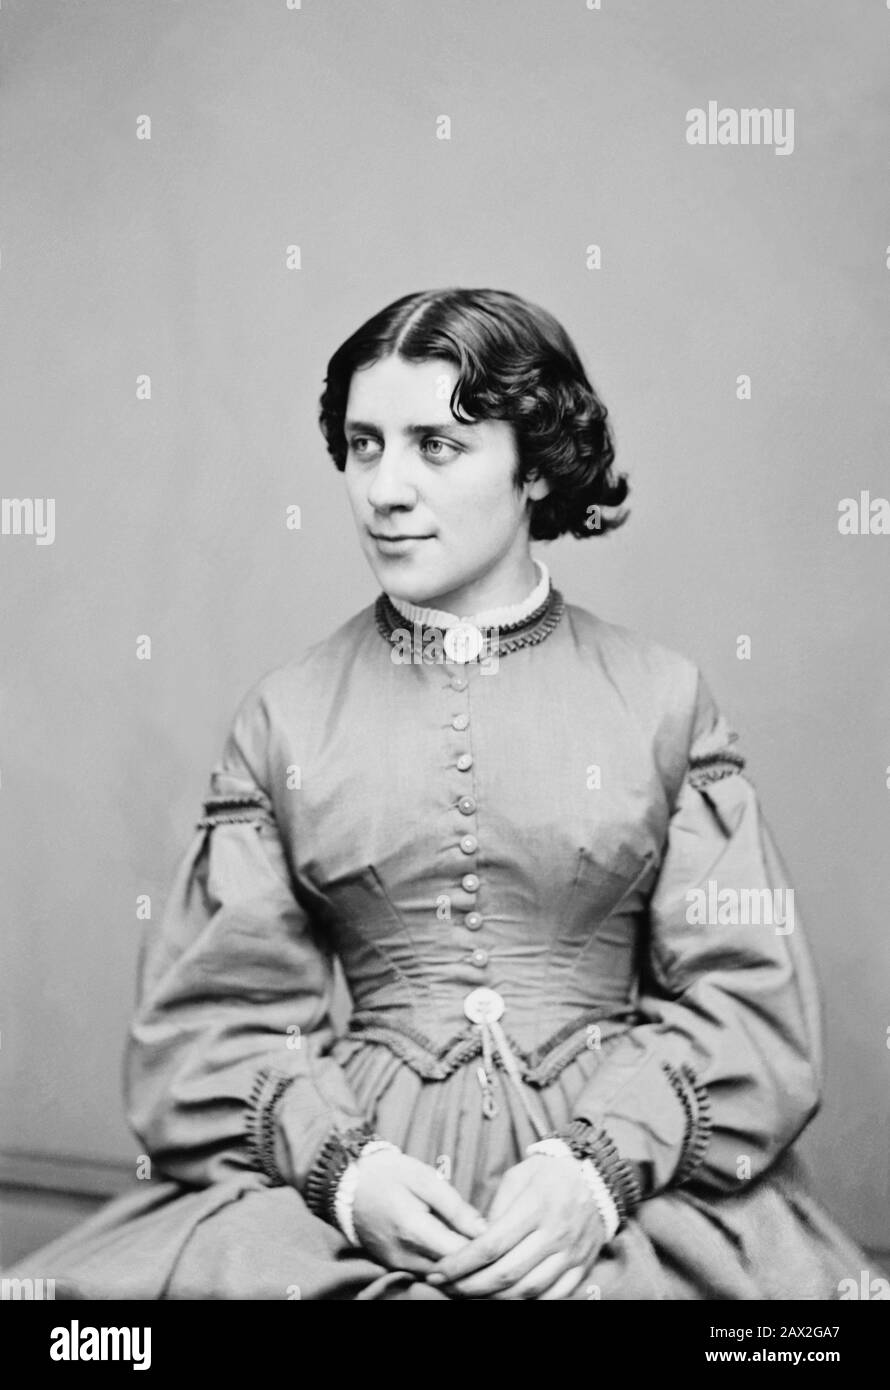 1861 ca , USA :The social reformer activist and leading figure of the early woman's movement ANNA ELIZABETH DICKINSON ( 1842 - 1932 ). Photo by J.W. Hurn , Philadelphia - SUFFRAGETTA - sufraggetta - Sufragist - POLITICO - POLITICIAN - POLITICA - POLITIC - FEMMINISMO - FEMMINISTA - FEMMINISTE - SUFFRAGETTE - USA - ritratto - portrait - FEMMINISM - FEMMINIST - SUFFRAGIO UNIVERSALE - VOTO POLITICO ALLE DONNE - FASHION - MODA - OTTOCENTO - 800's - '800 - pin - spilla - lace - pizzo - profilo - profile -  --- Archivio GBB Stock Photo